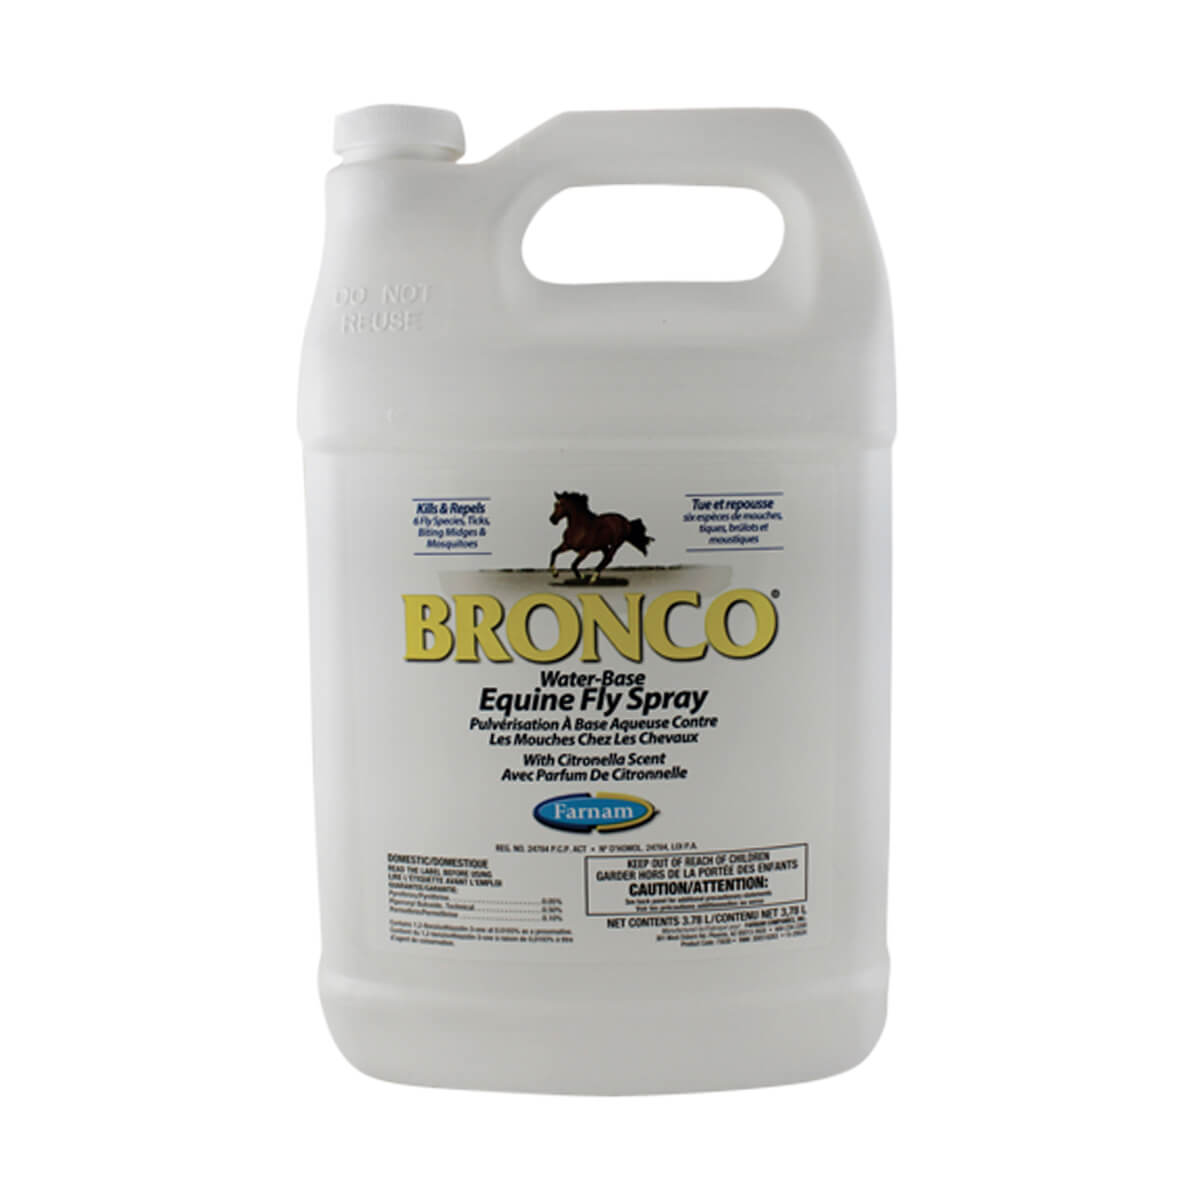 Bronco Equine Fly Spray - 3.78 L